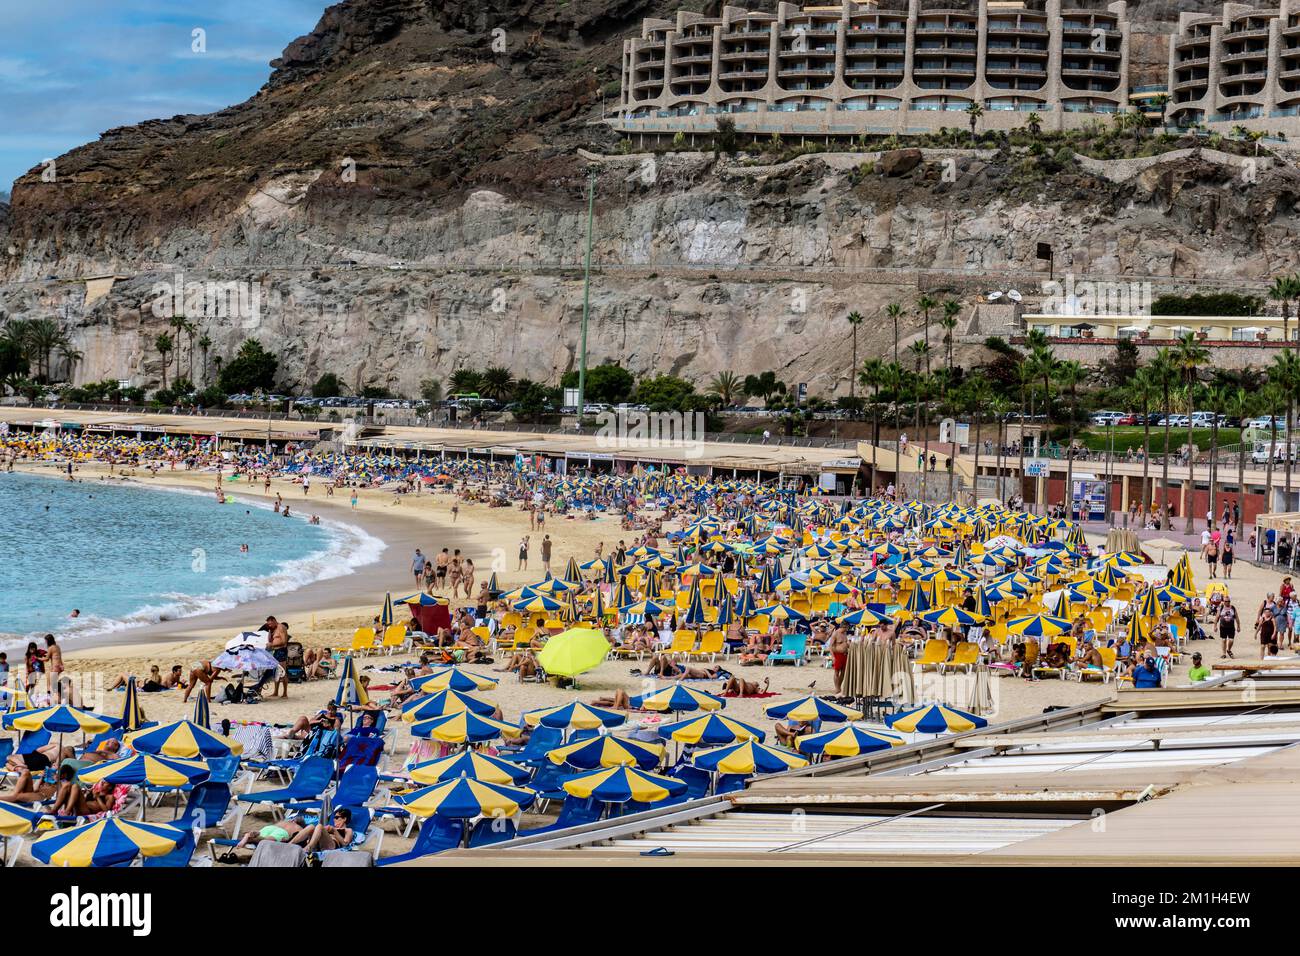 La vibrante playa y el impresionante paisaje de Playa de Amadores en Gran Canaria cobran vida con una explosión de color. Foto de stock